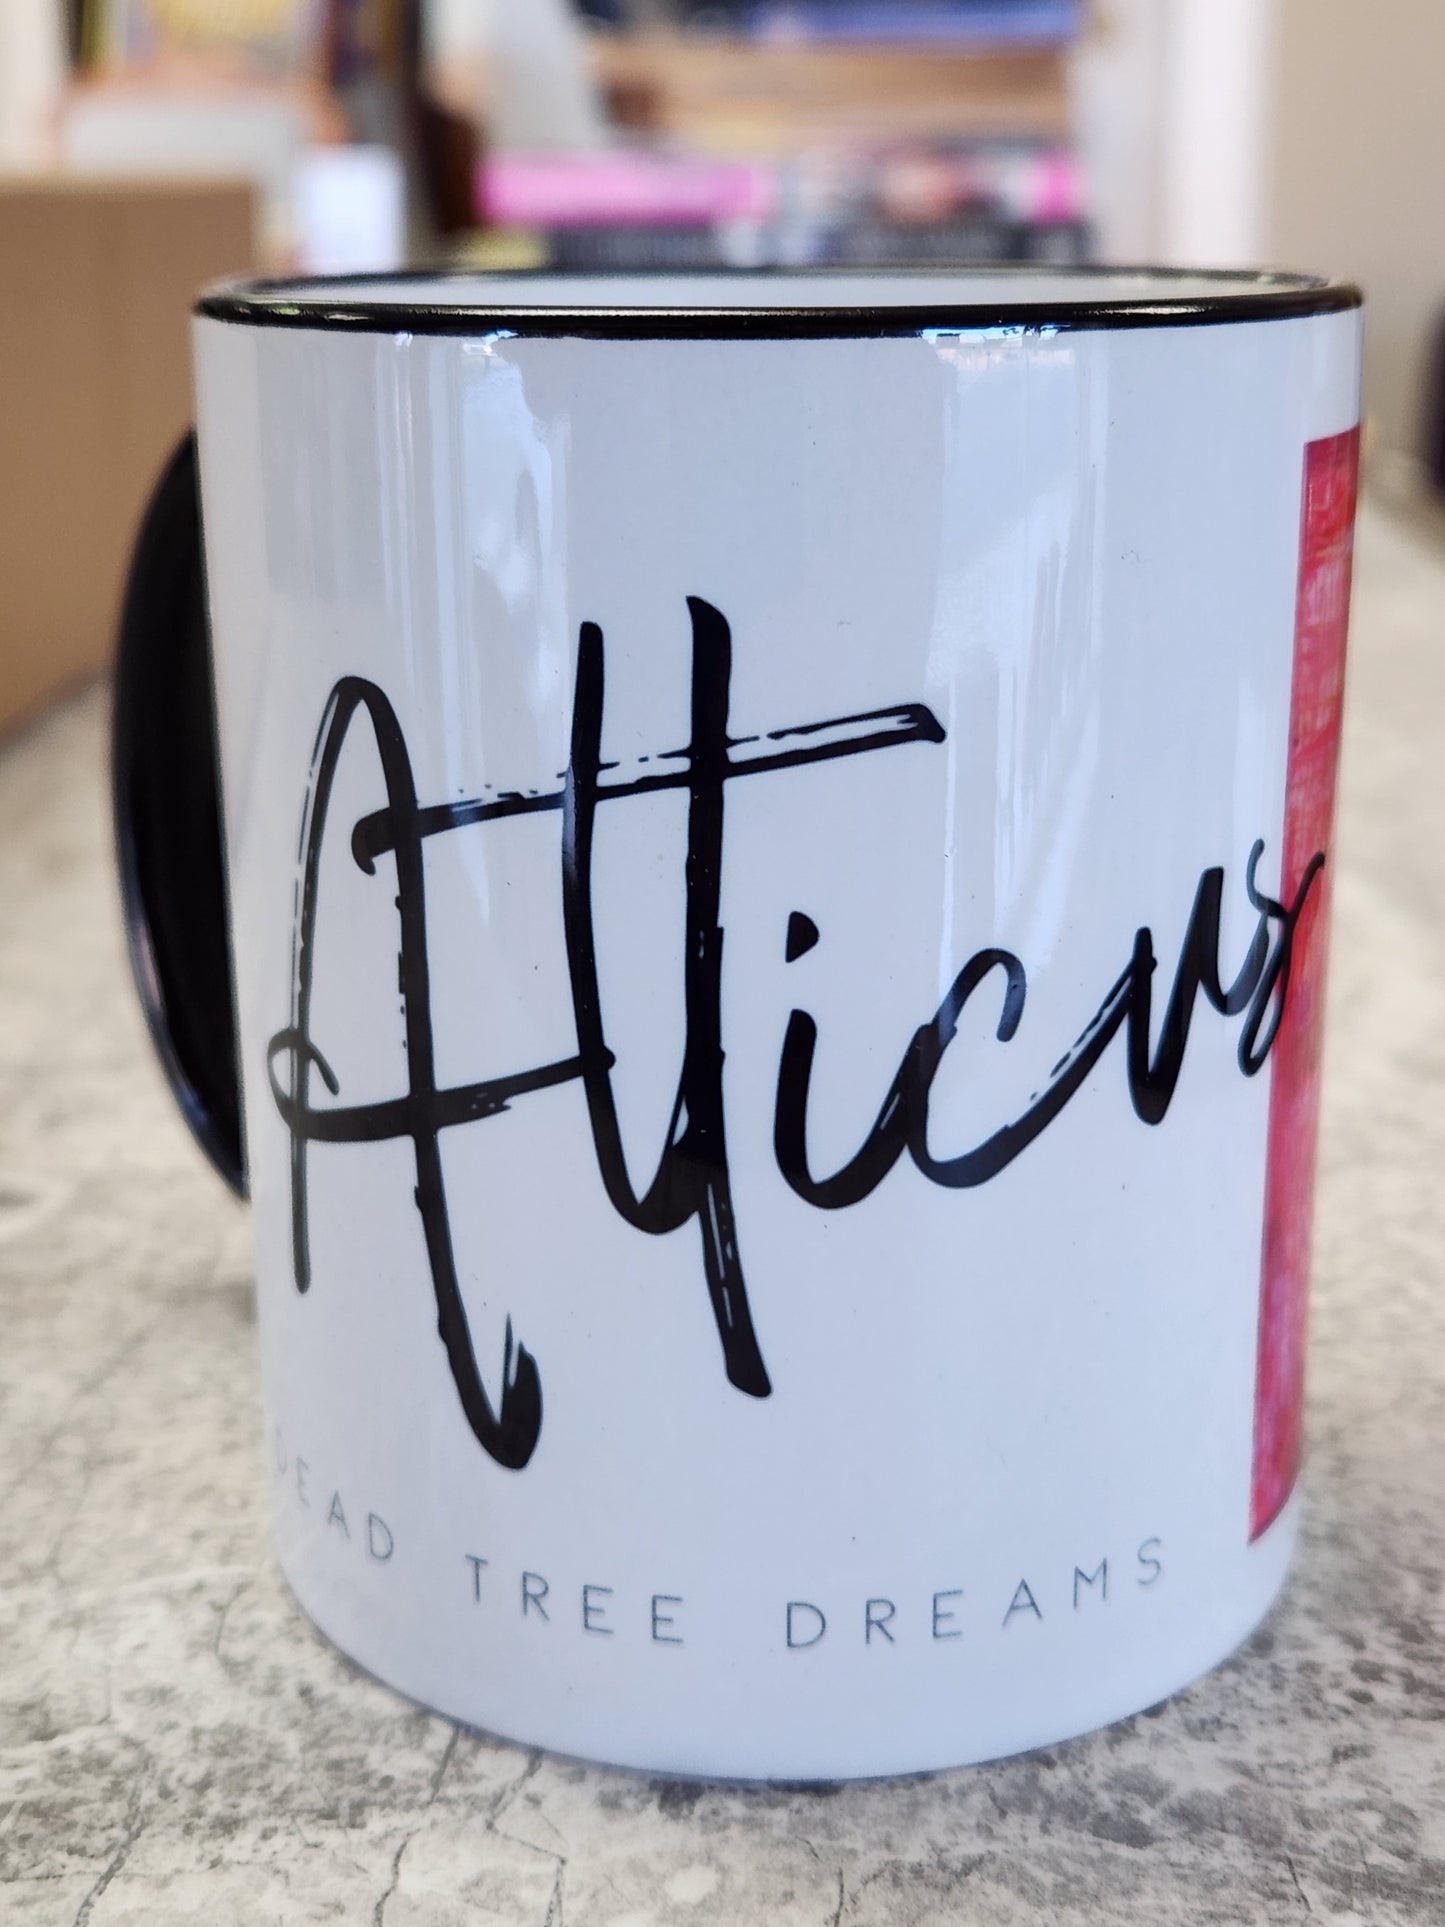 Atticus Coffee Mug - Dead Tree Dreams Bookstore